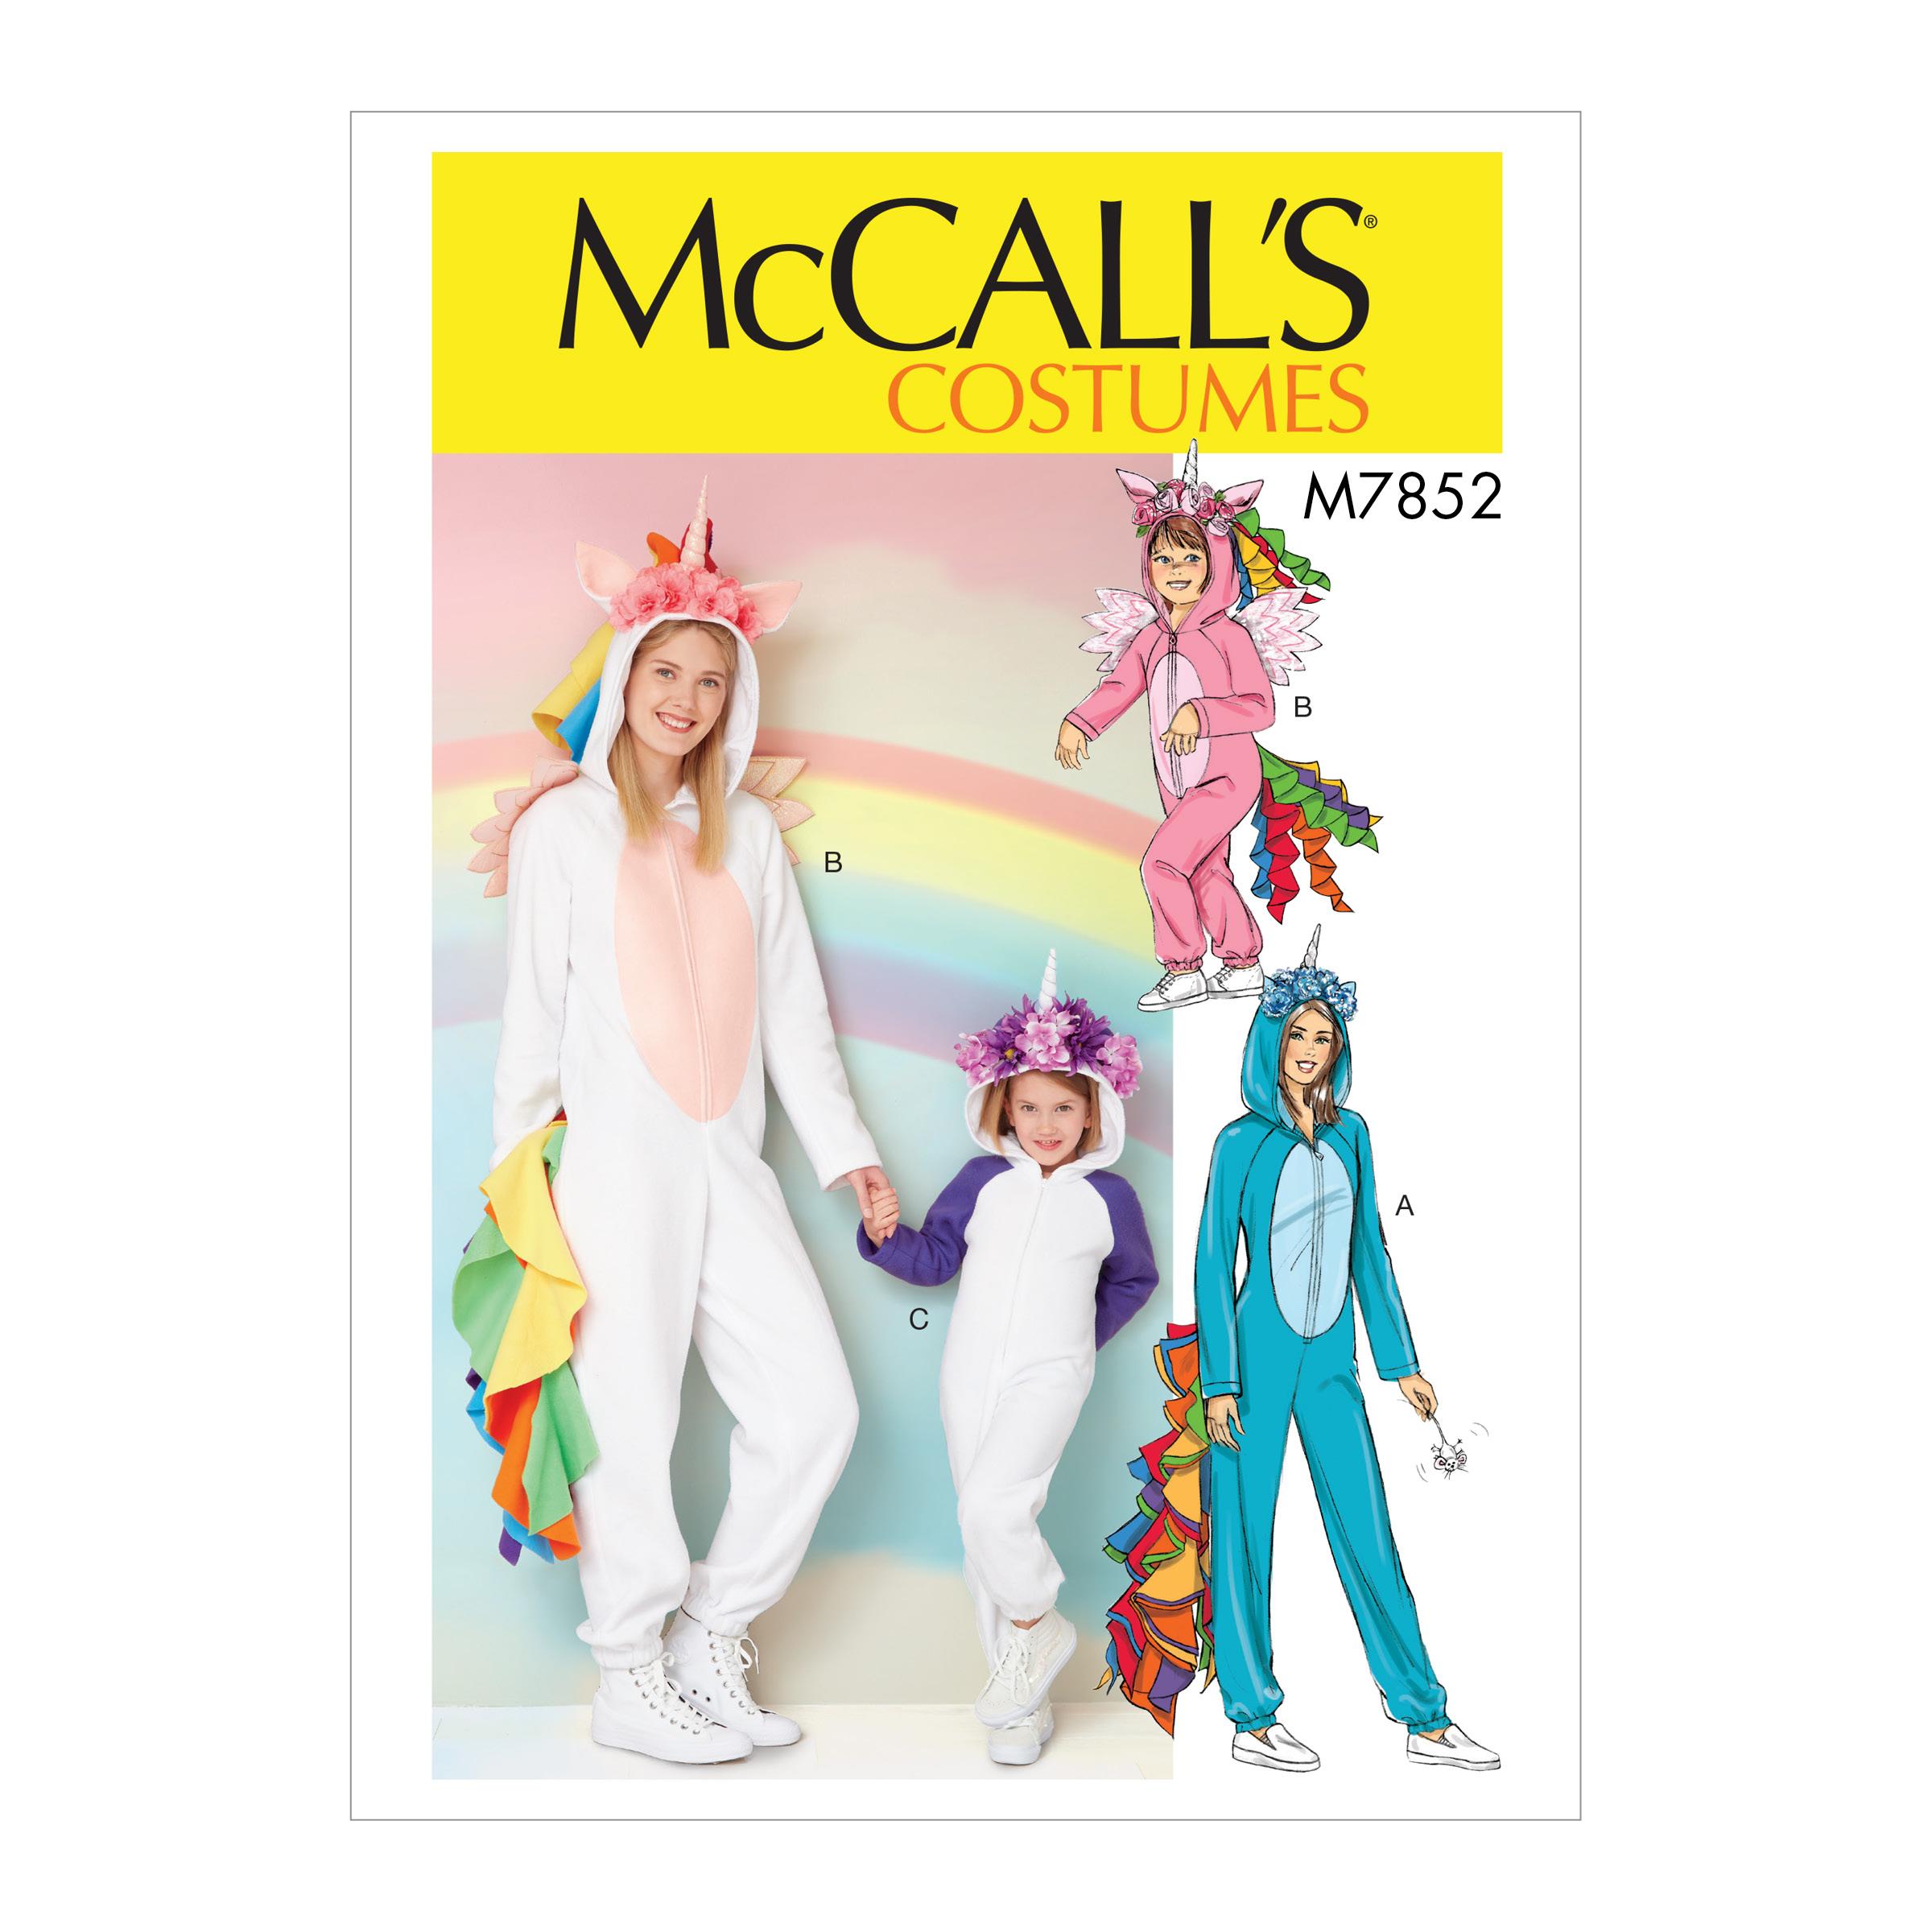 McCalls M7852 Costumes